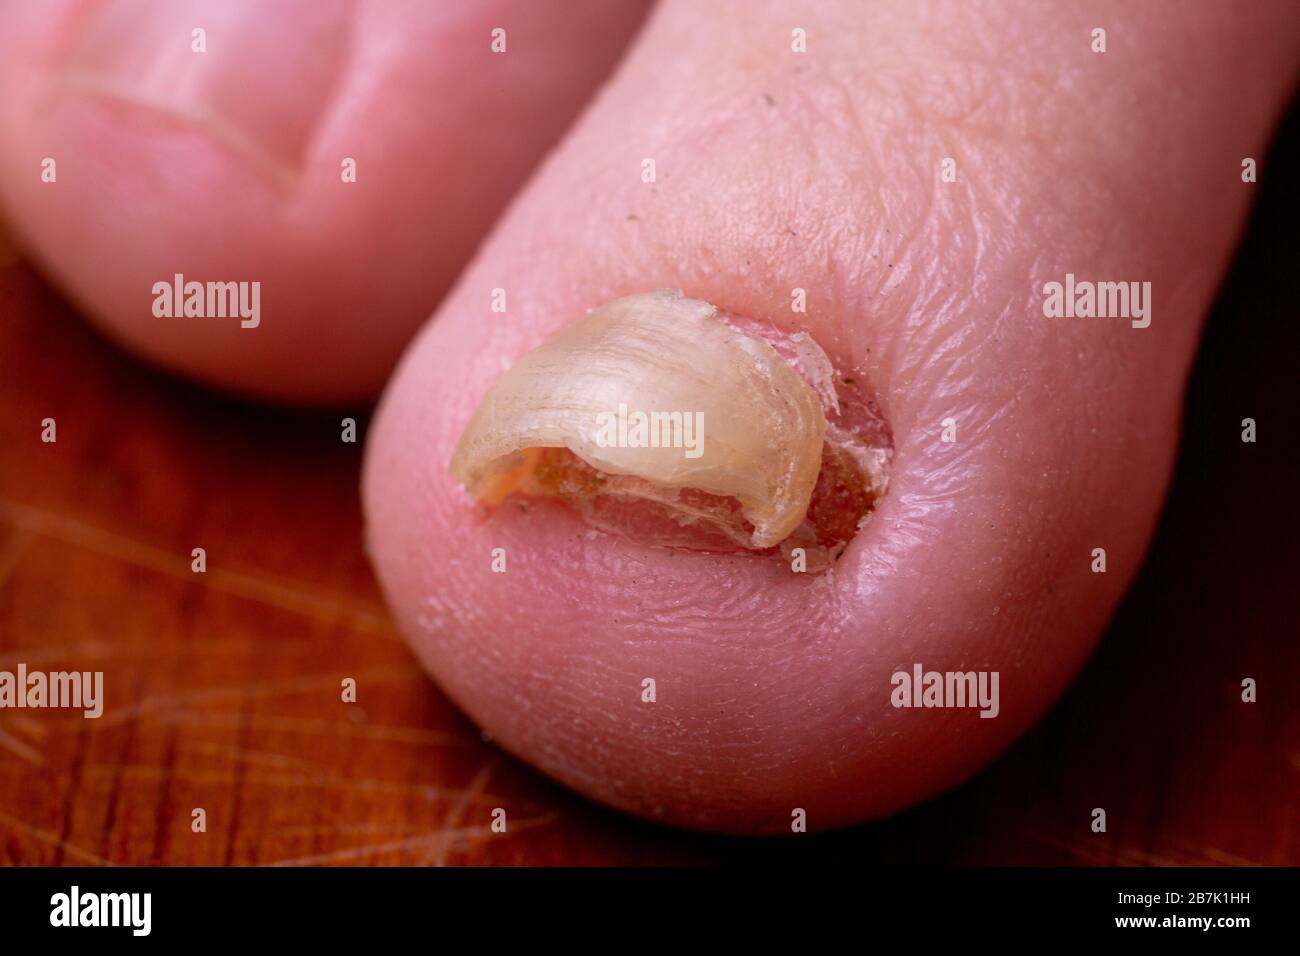 Primer plano macro de un dedo del pie con micosis trichophyton debajo de una uña desfigurada que se suelta. Coloración marrón amarilla de una uña de tiza Foto de stock